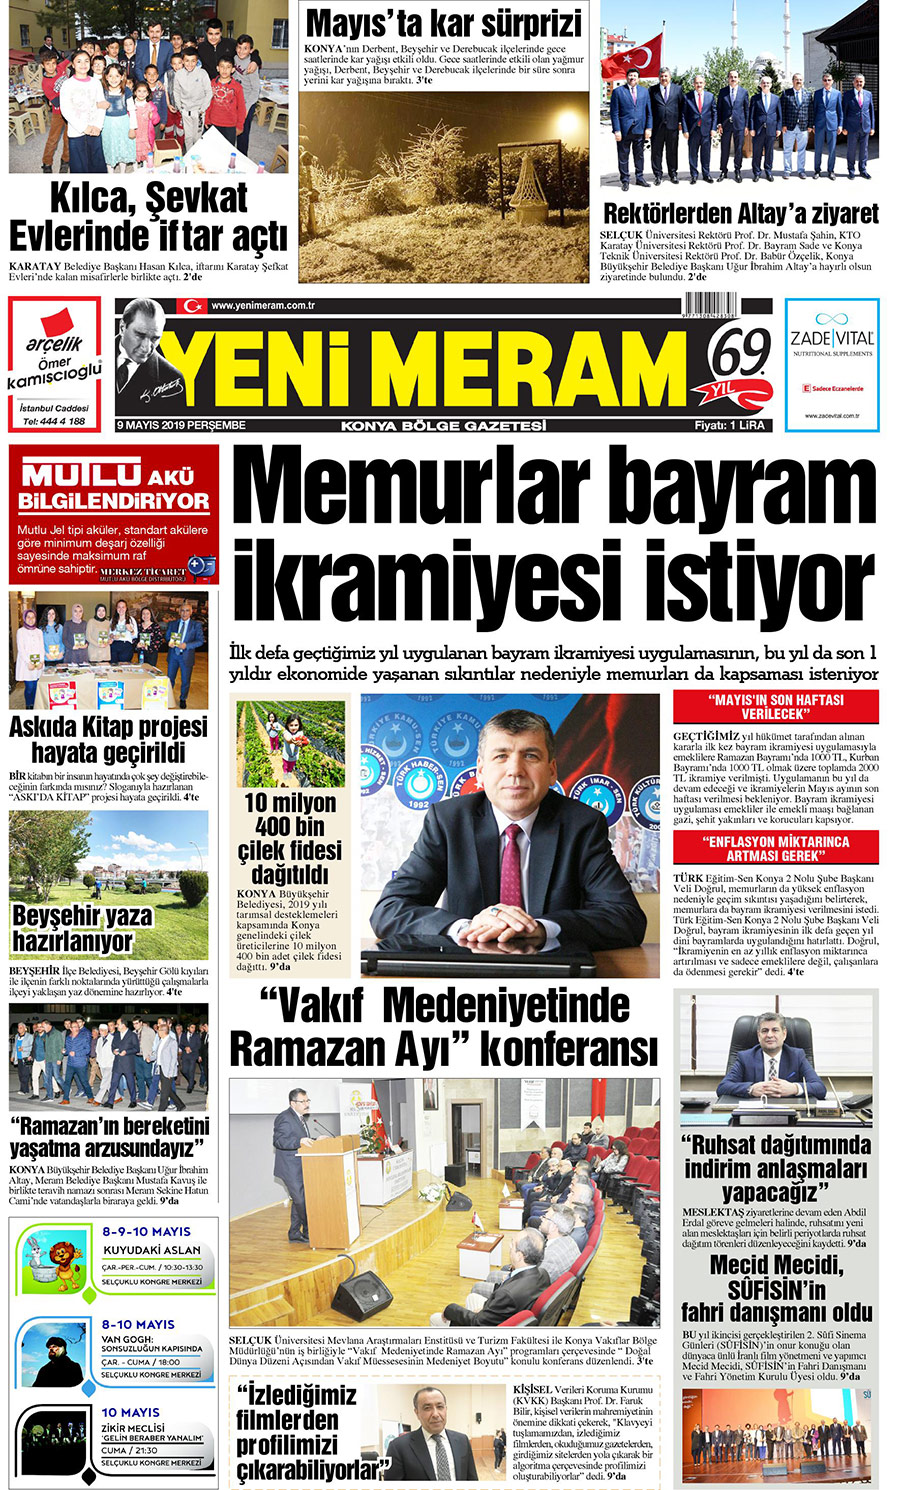 9 Mayıs 2019 Yeni Meram Gazetesi